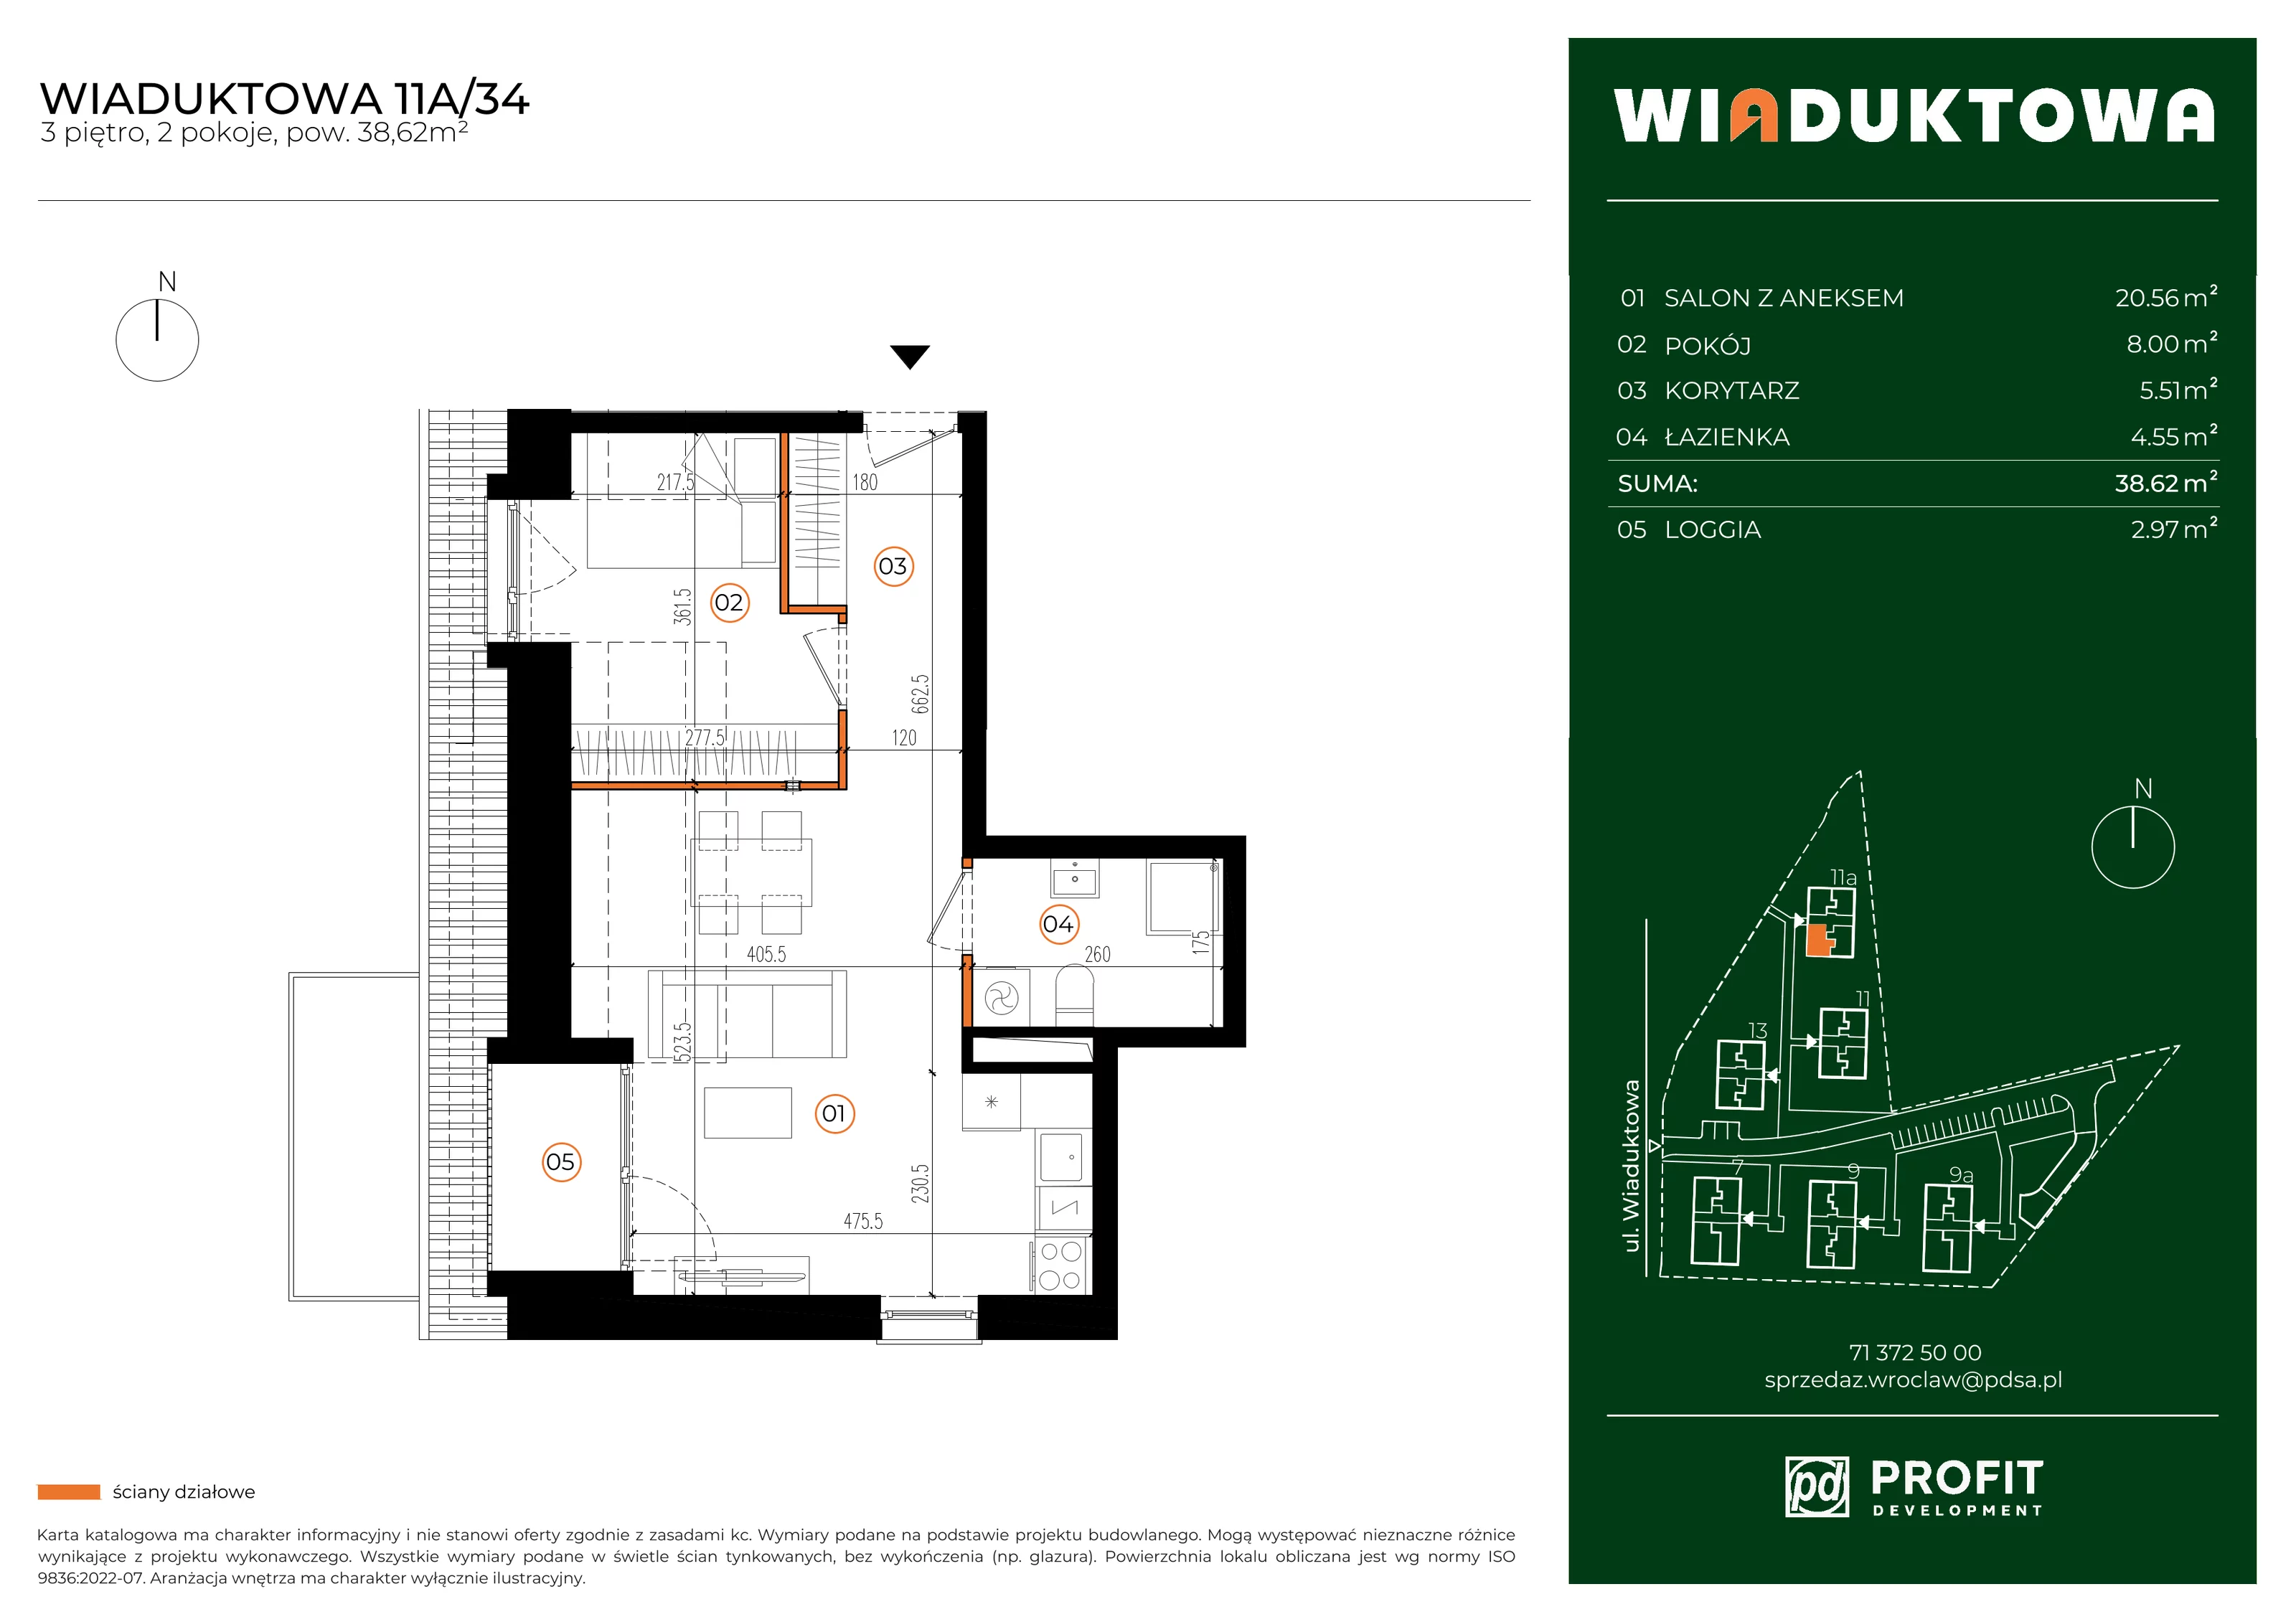 Mieszkanie 38,62 m², piętro 3, oferta nr WI/11A/34, Wiaduktowa, Wrocław, Krzyki-Partynice, Krzyki, ul. Wiaduktowa